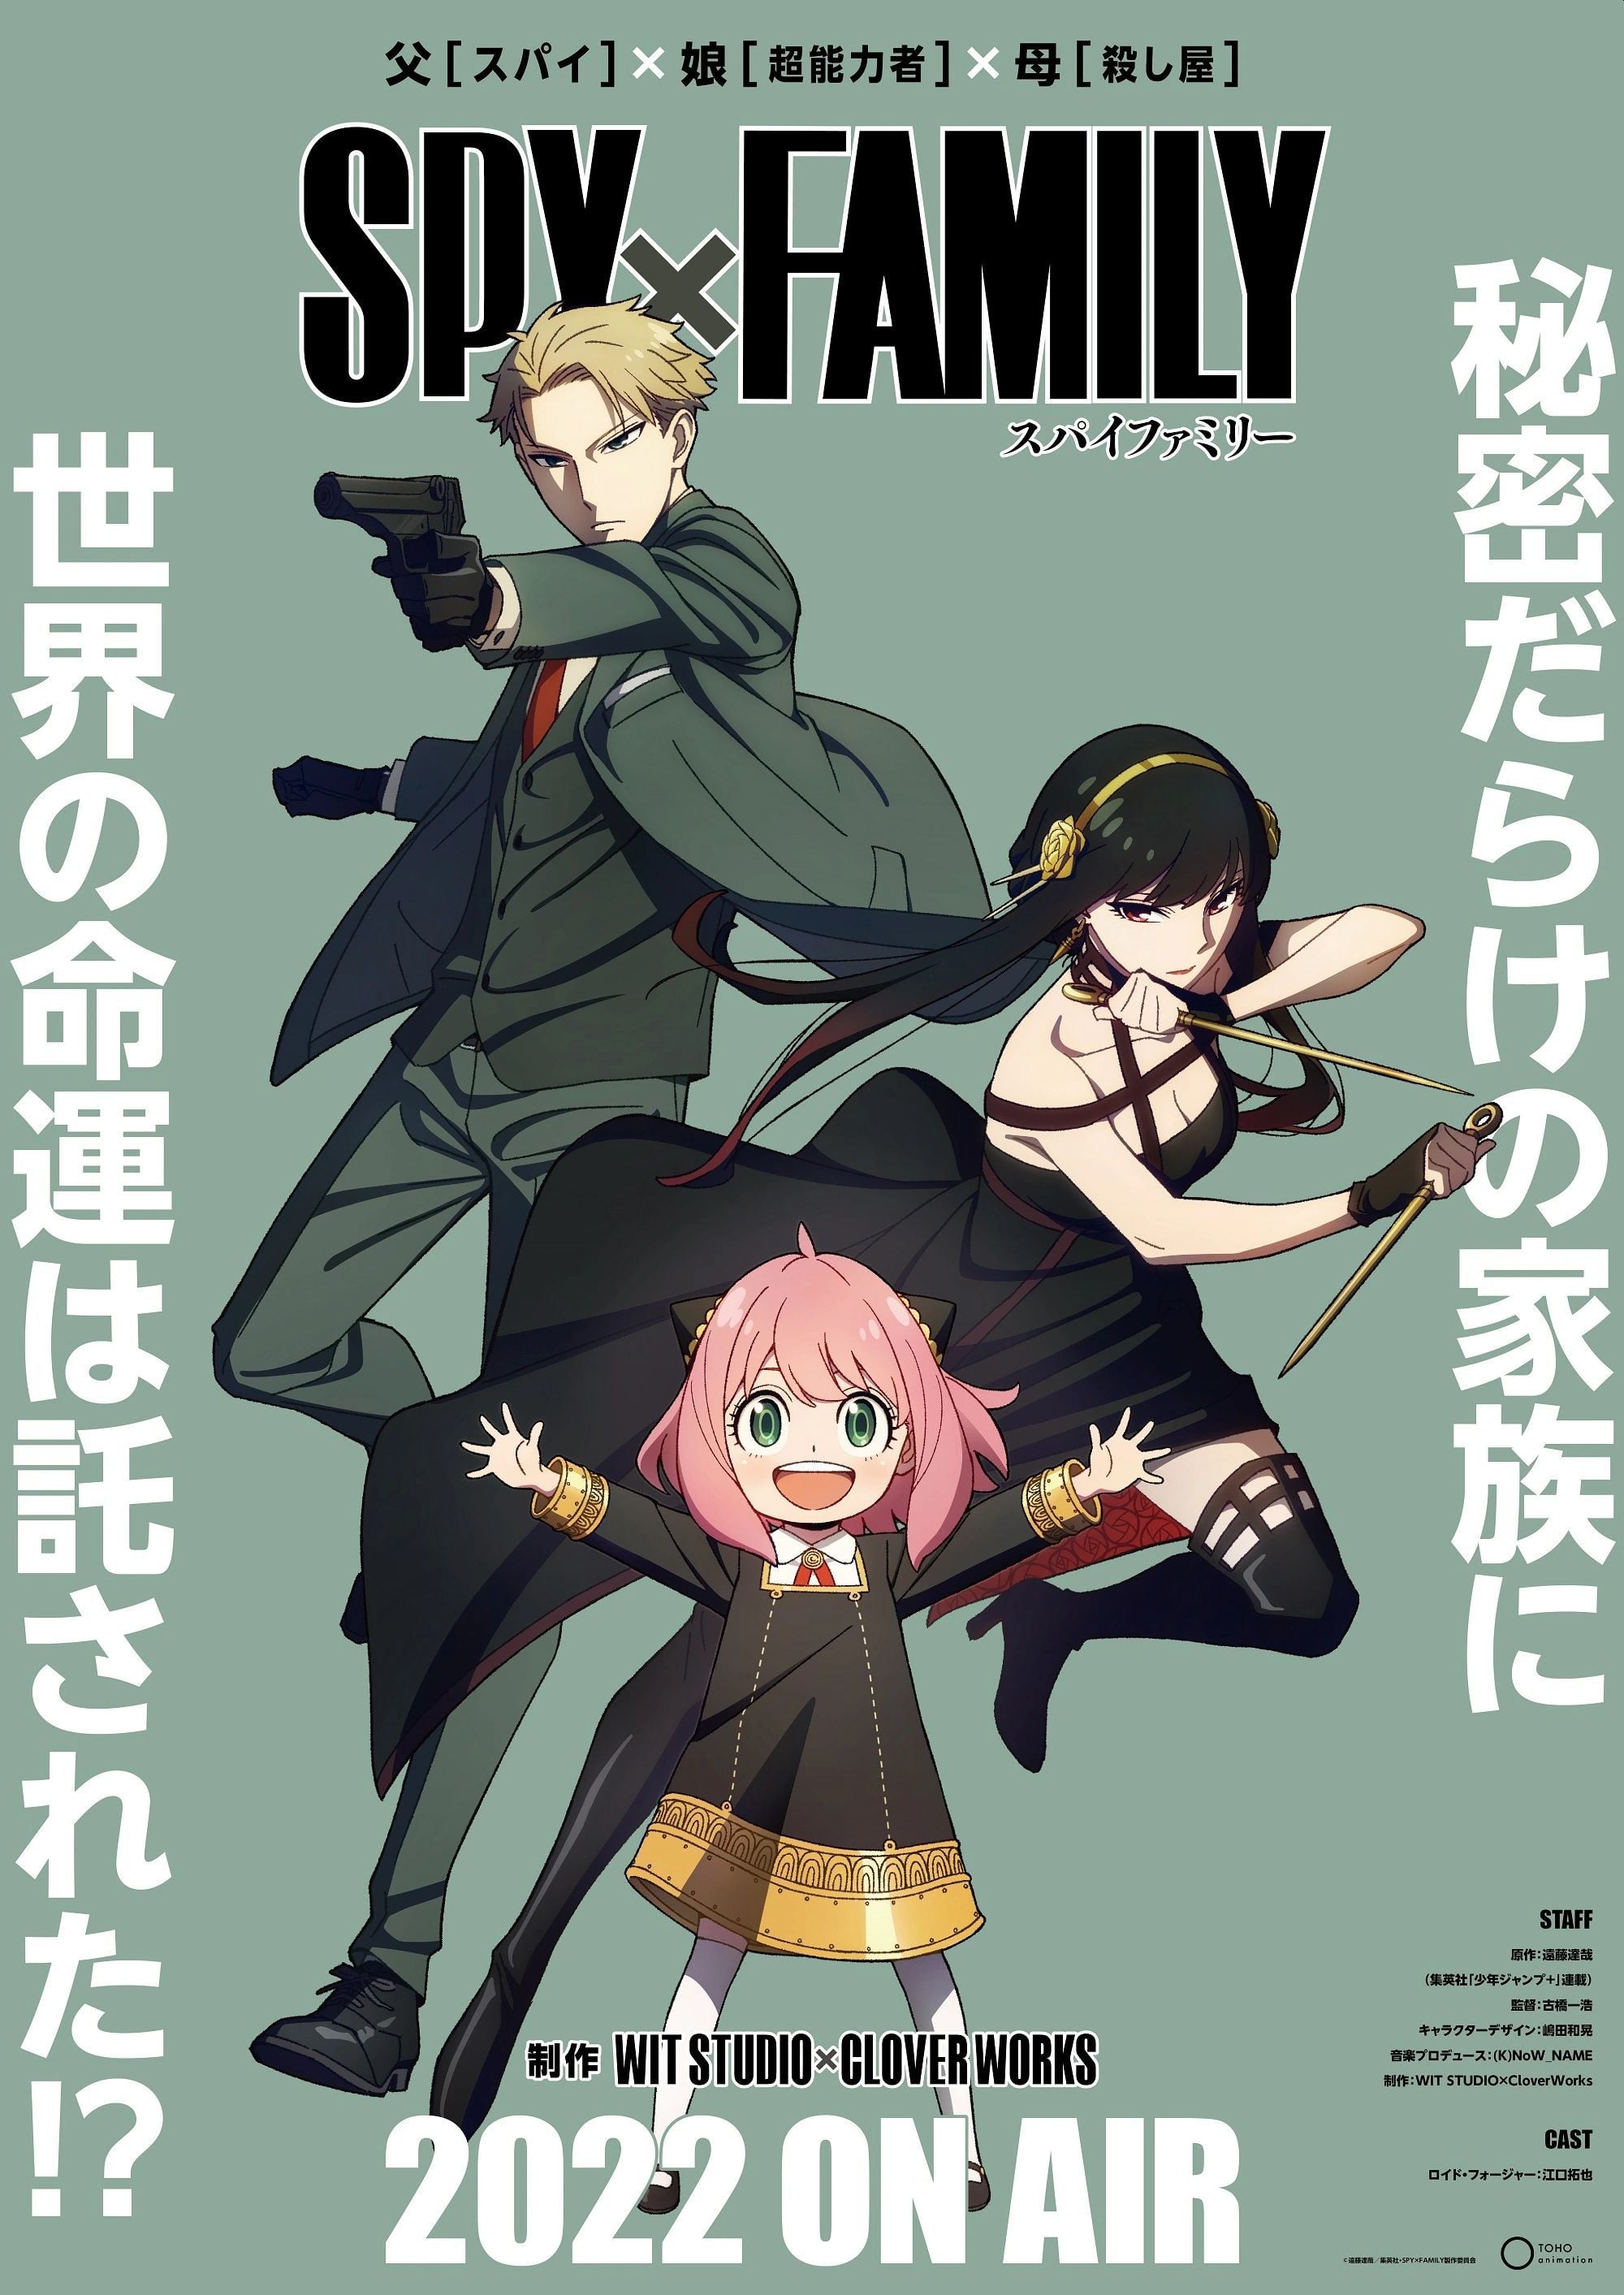 Póster oficial del lanzamiento de "Spy x Family". (Crunchyroll)